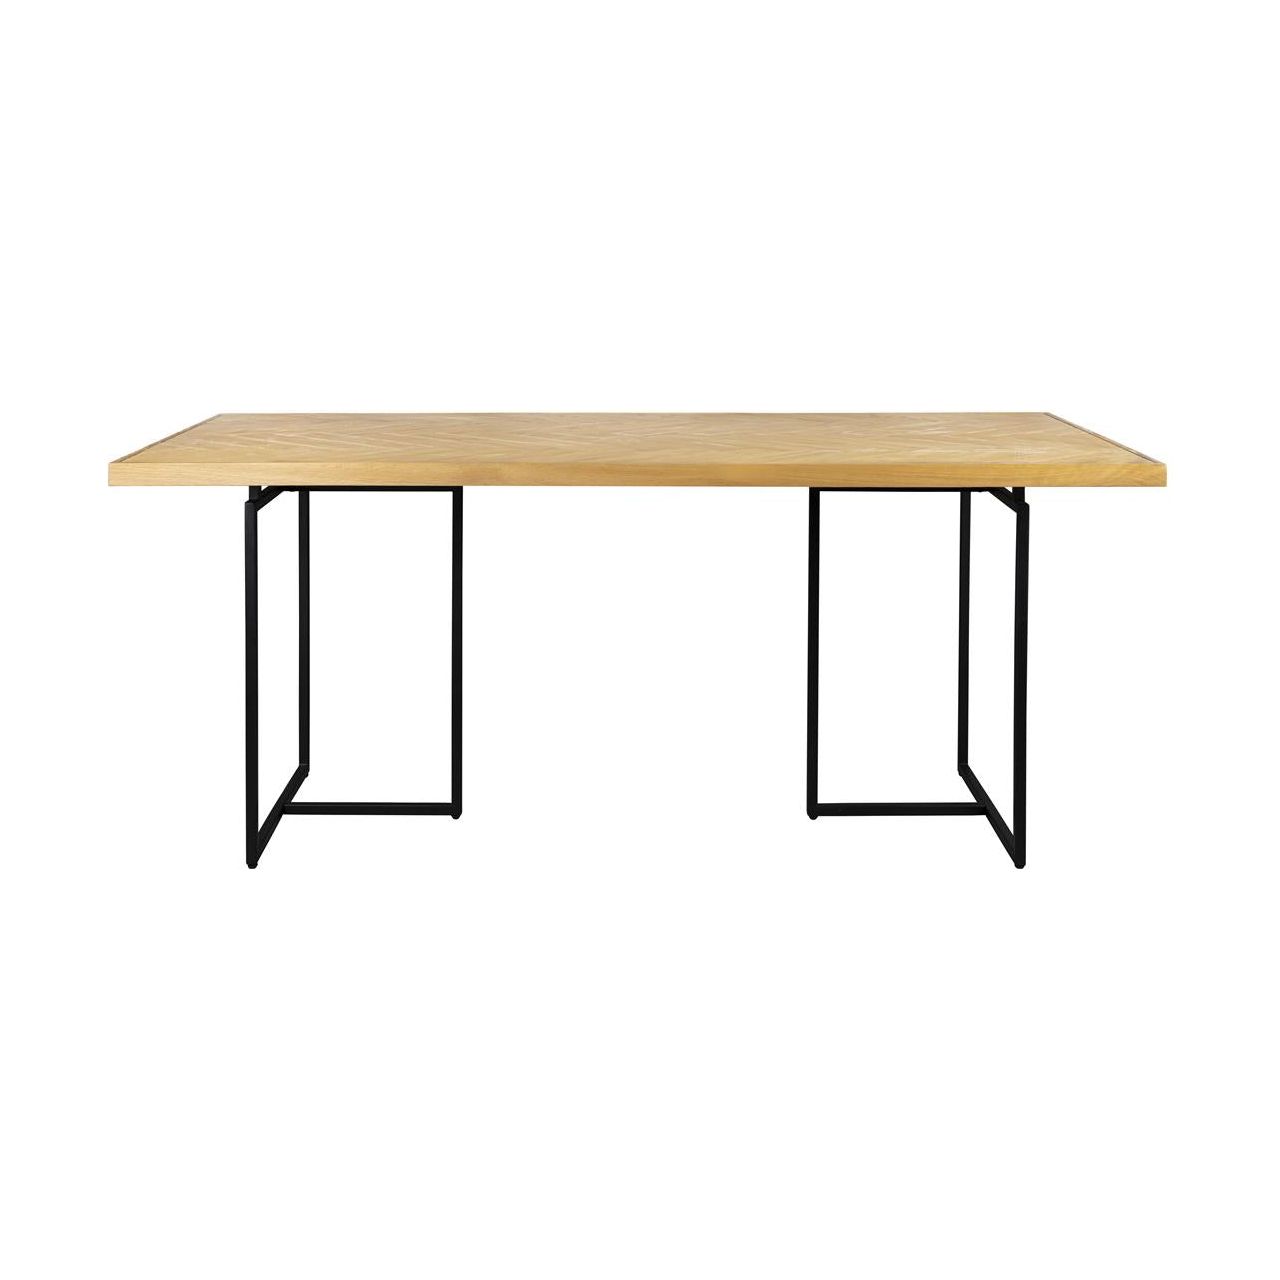 Table class 180x90 oak